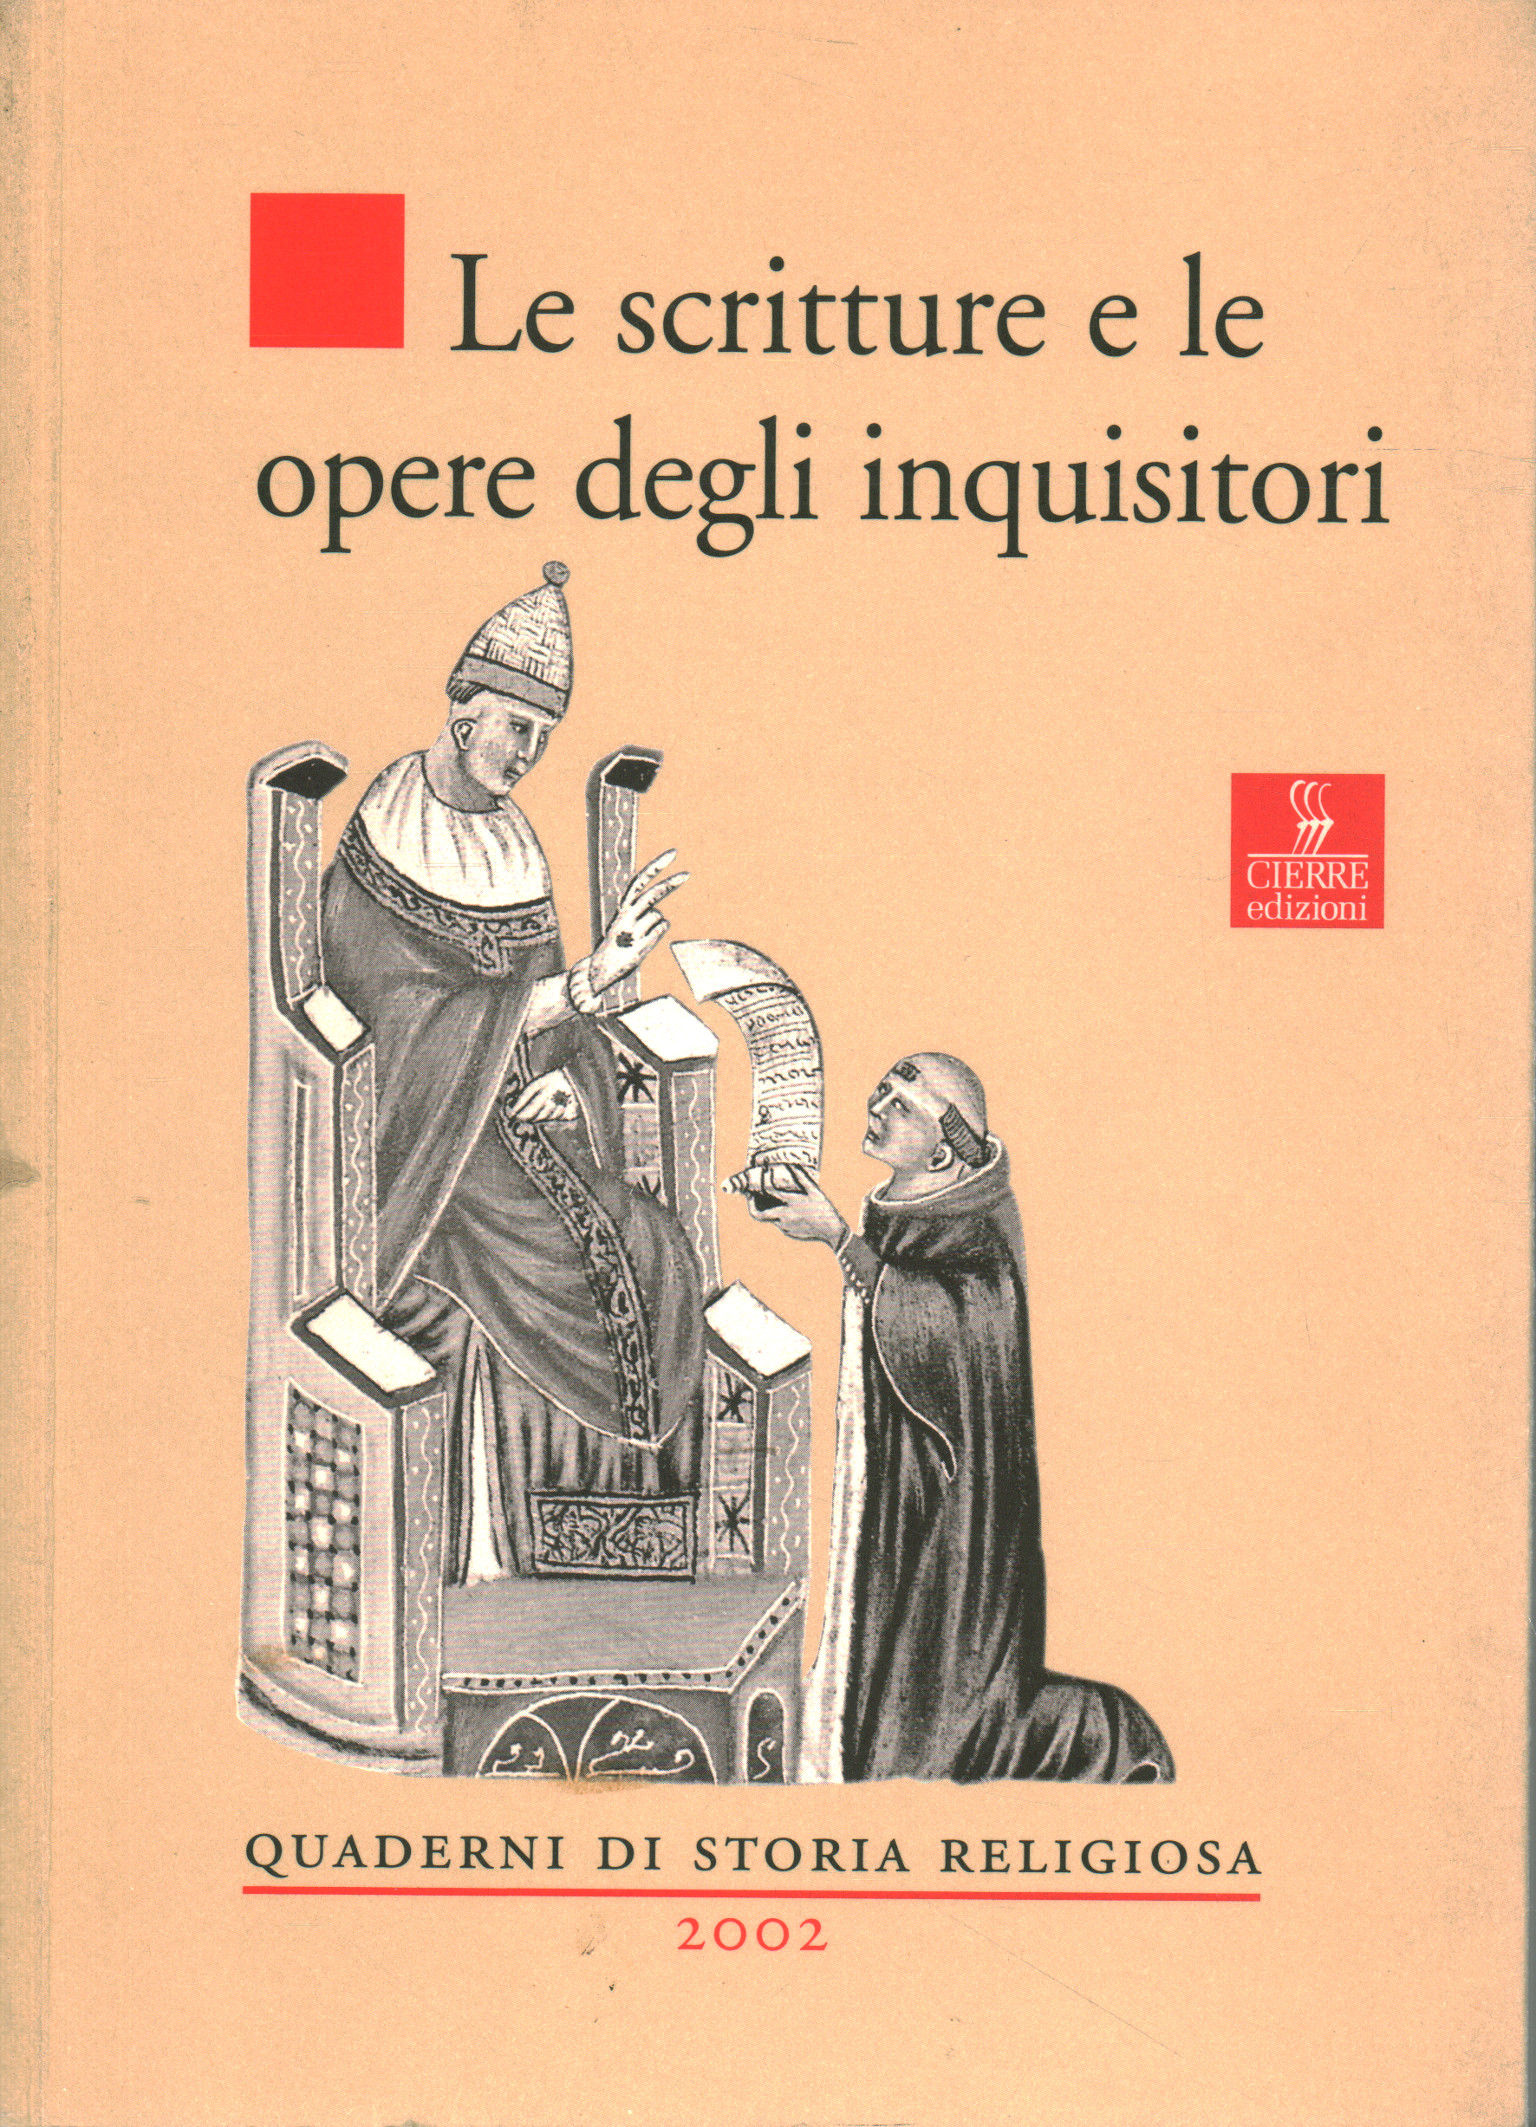 Le scritture e le opere degli inquisitori, AA.VV.